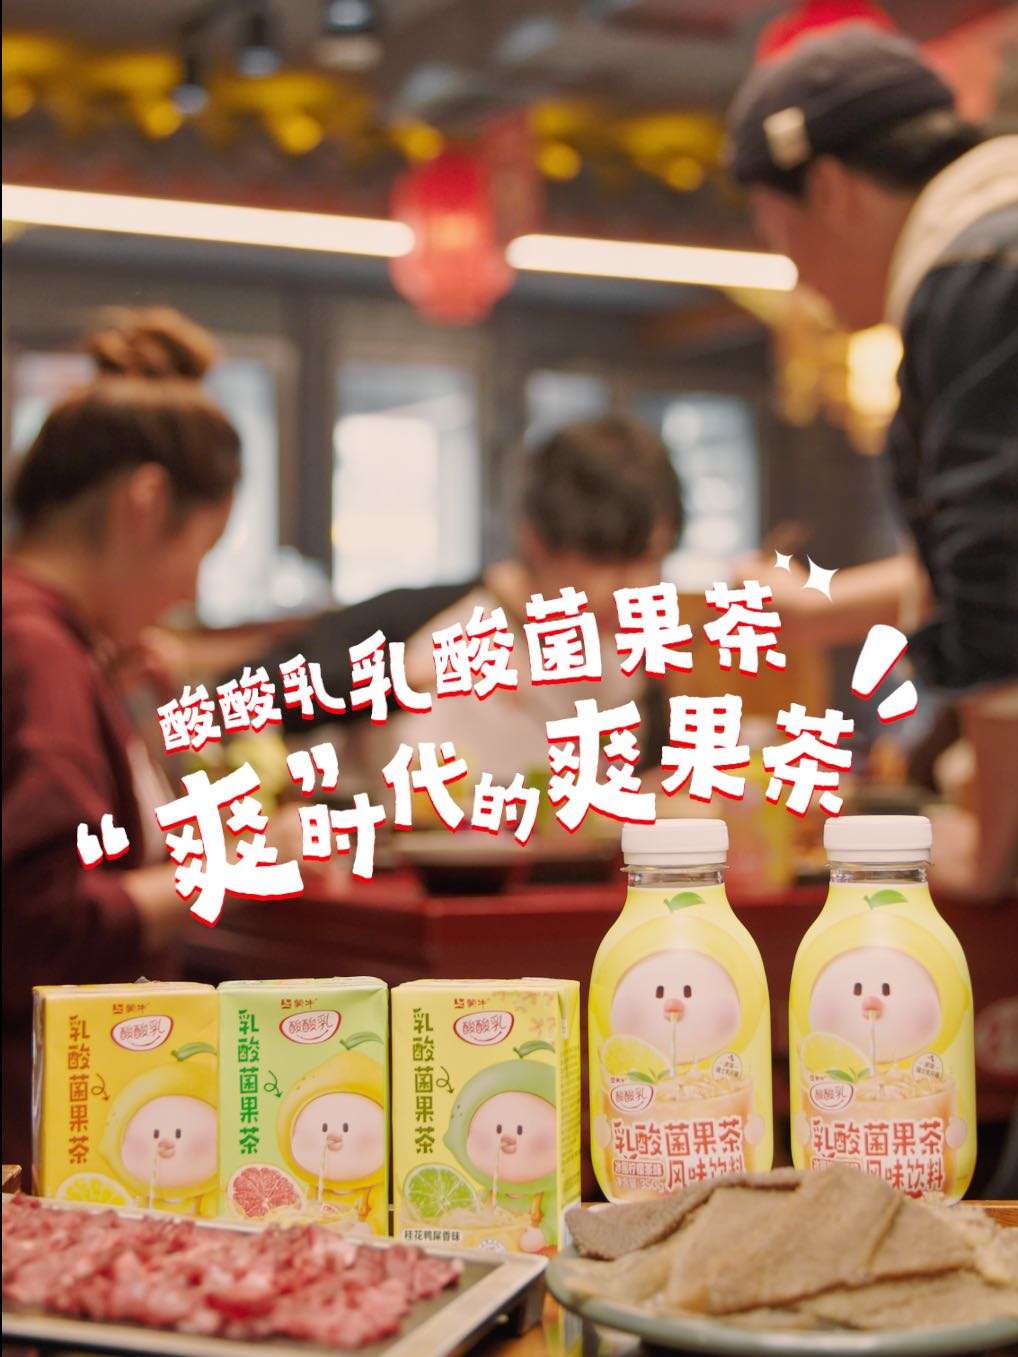 蒙牛酸酸乳果茶产品故事视频-火锅篇